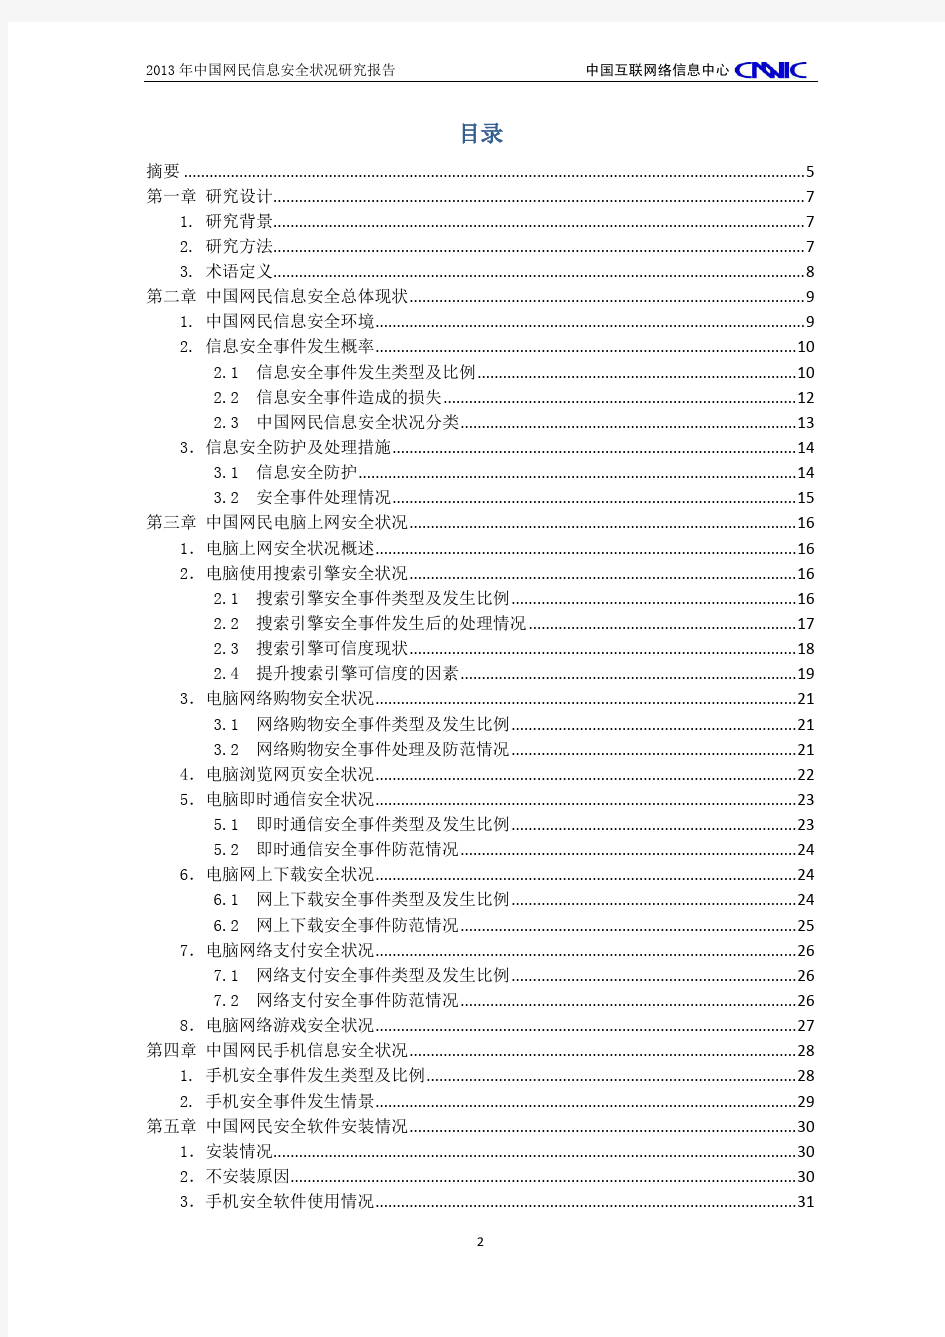 2013年中国网民信息安全状况研究报告